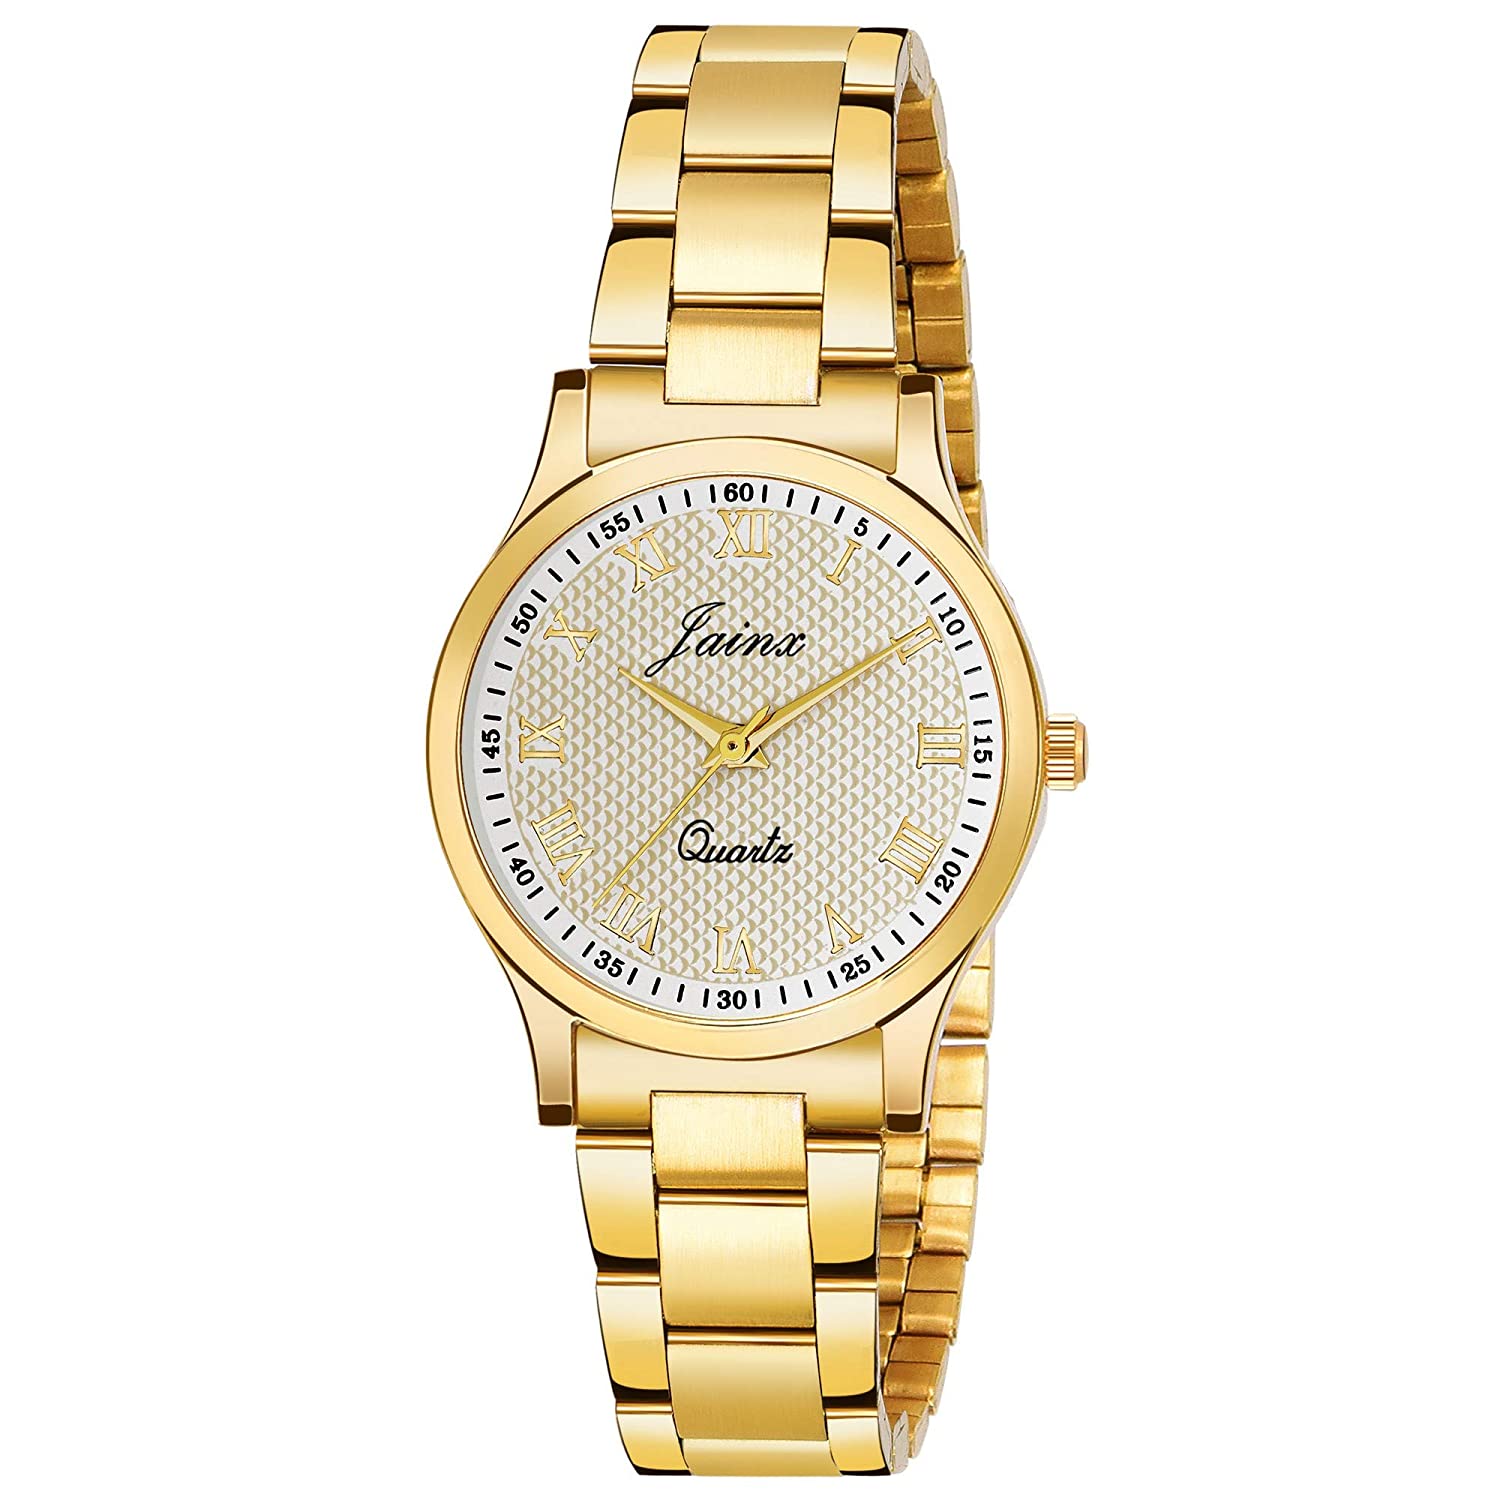 Premium Golden Chain Analog Watch - For Women JW1209 - Jainx Store